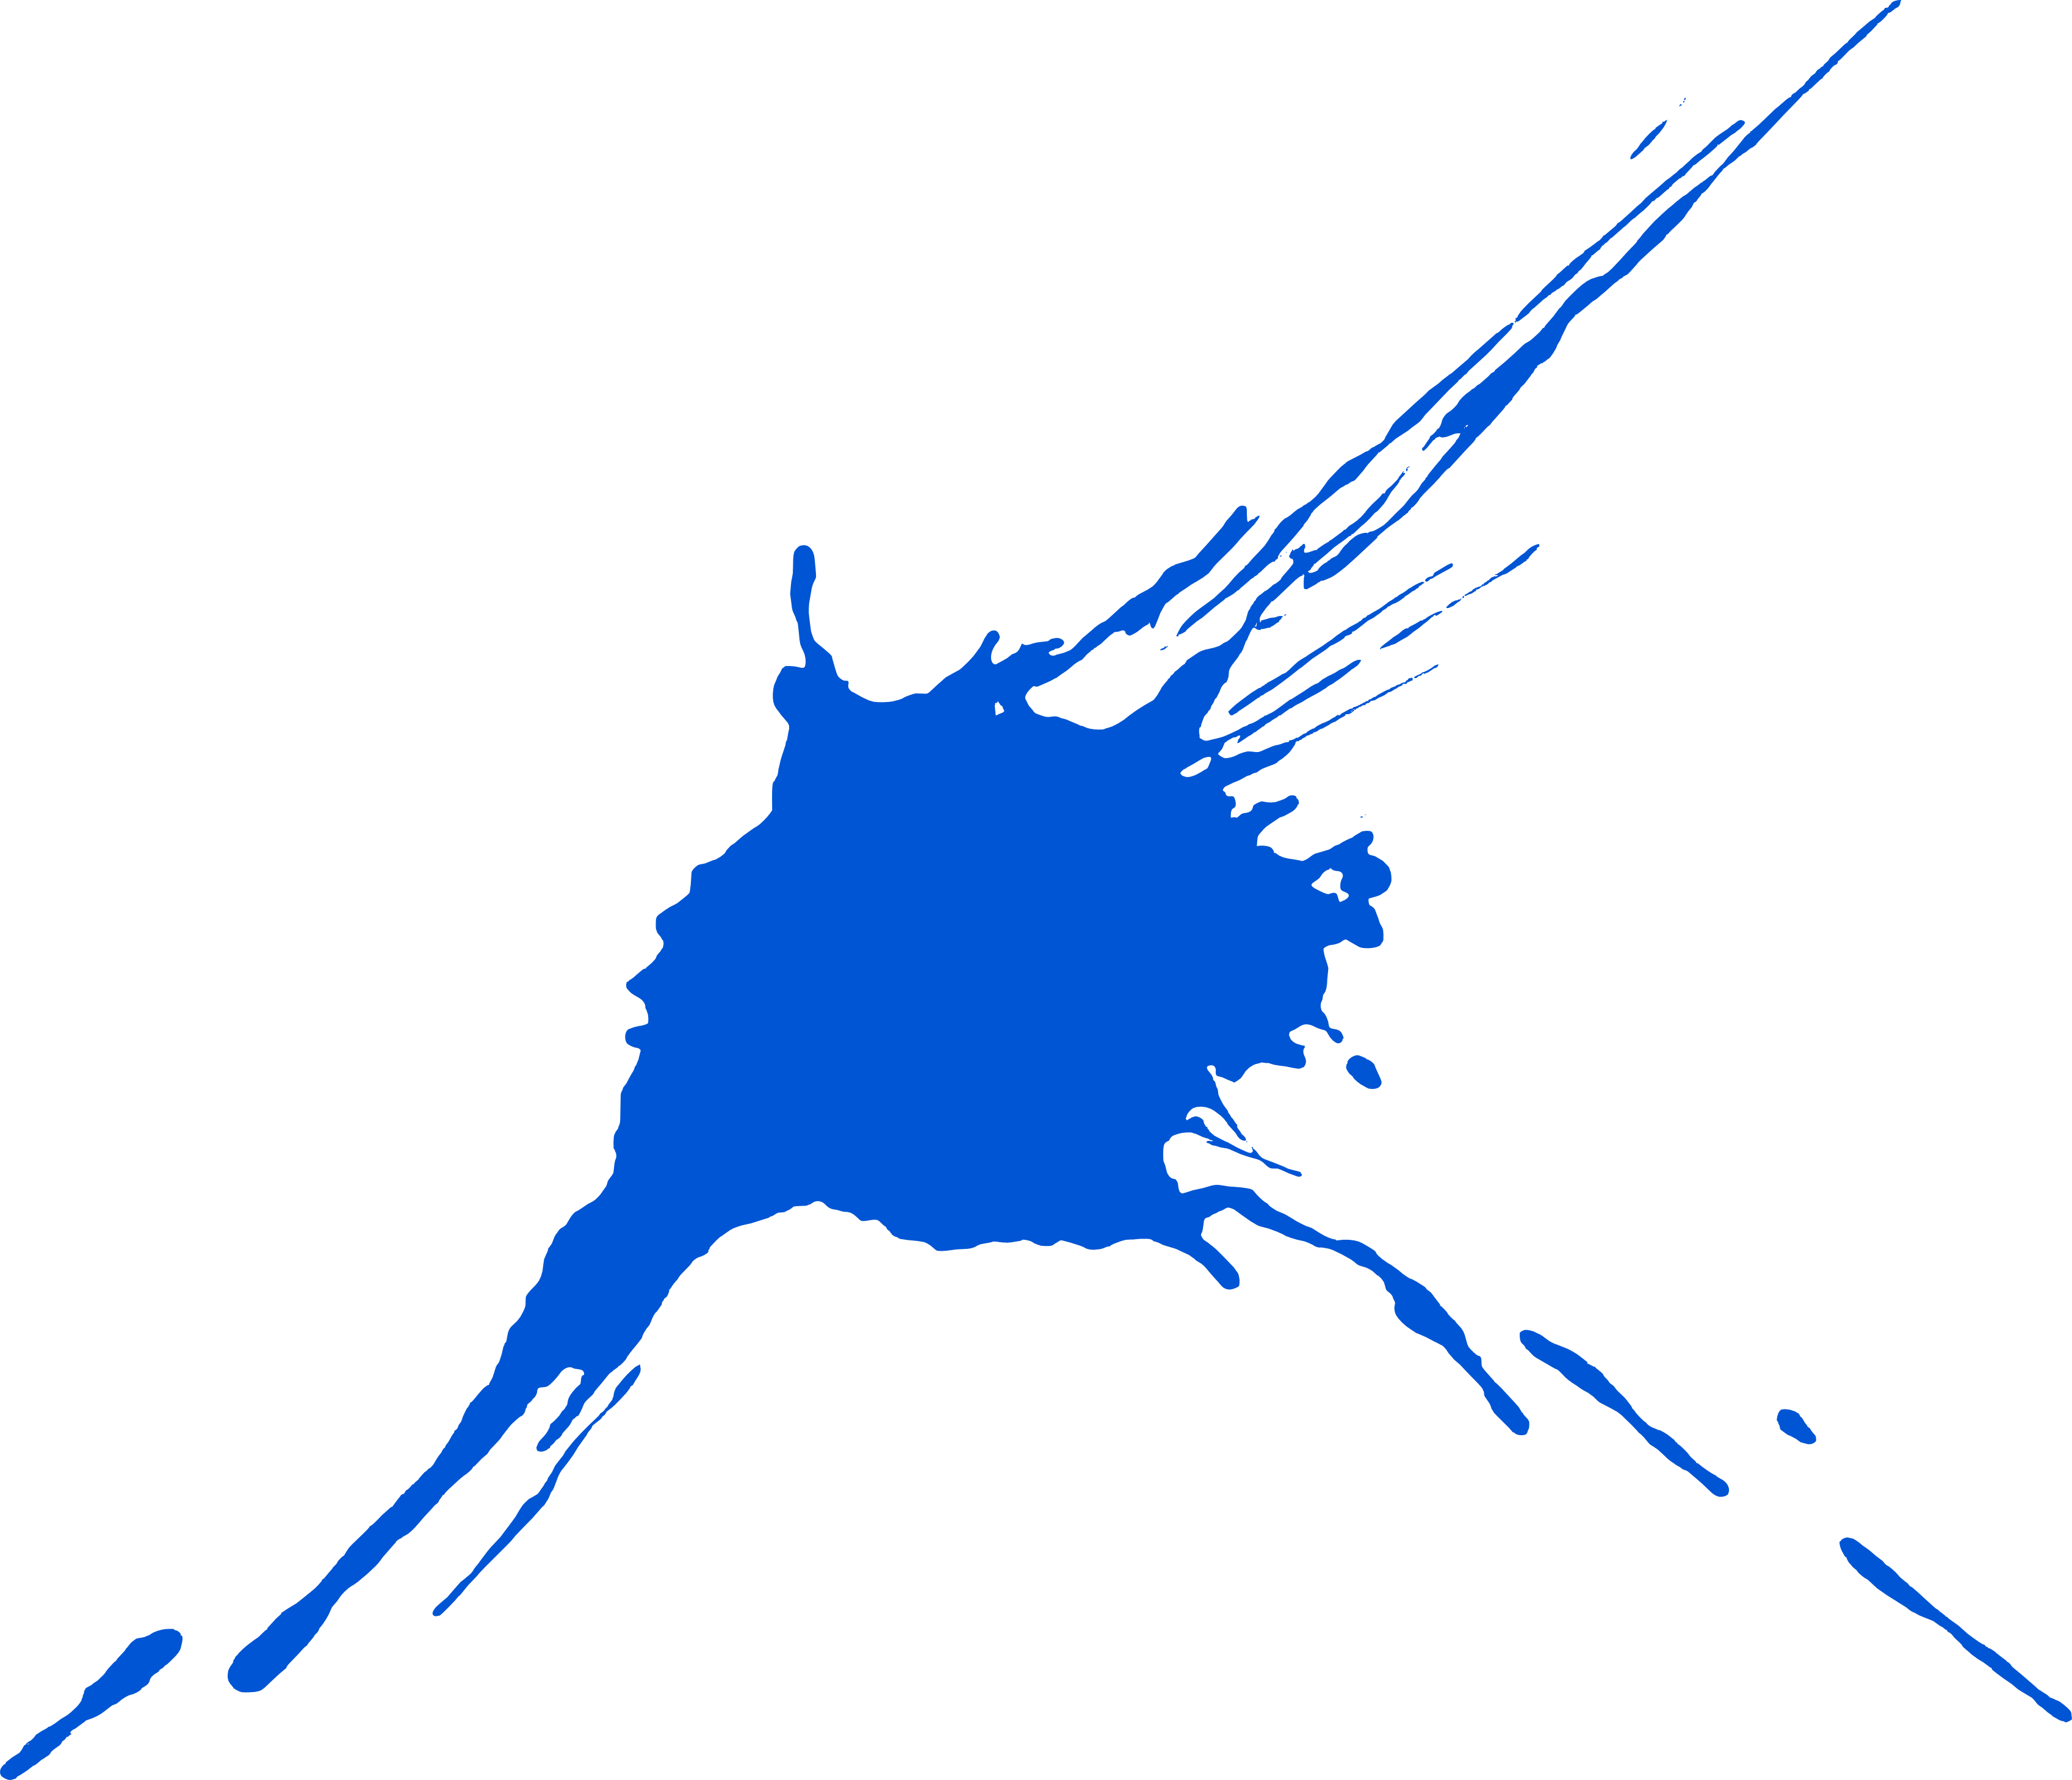 10 Blue Paint Splatters - Blue Paint Splatter Transparent (3395x2916), Png Download